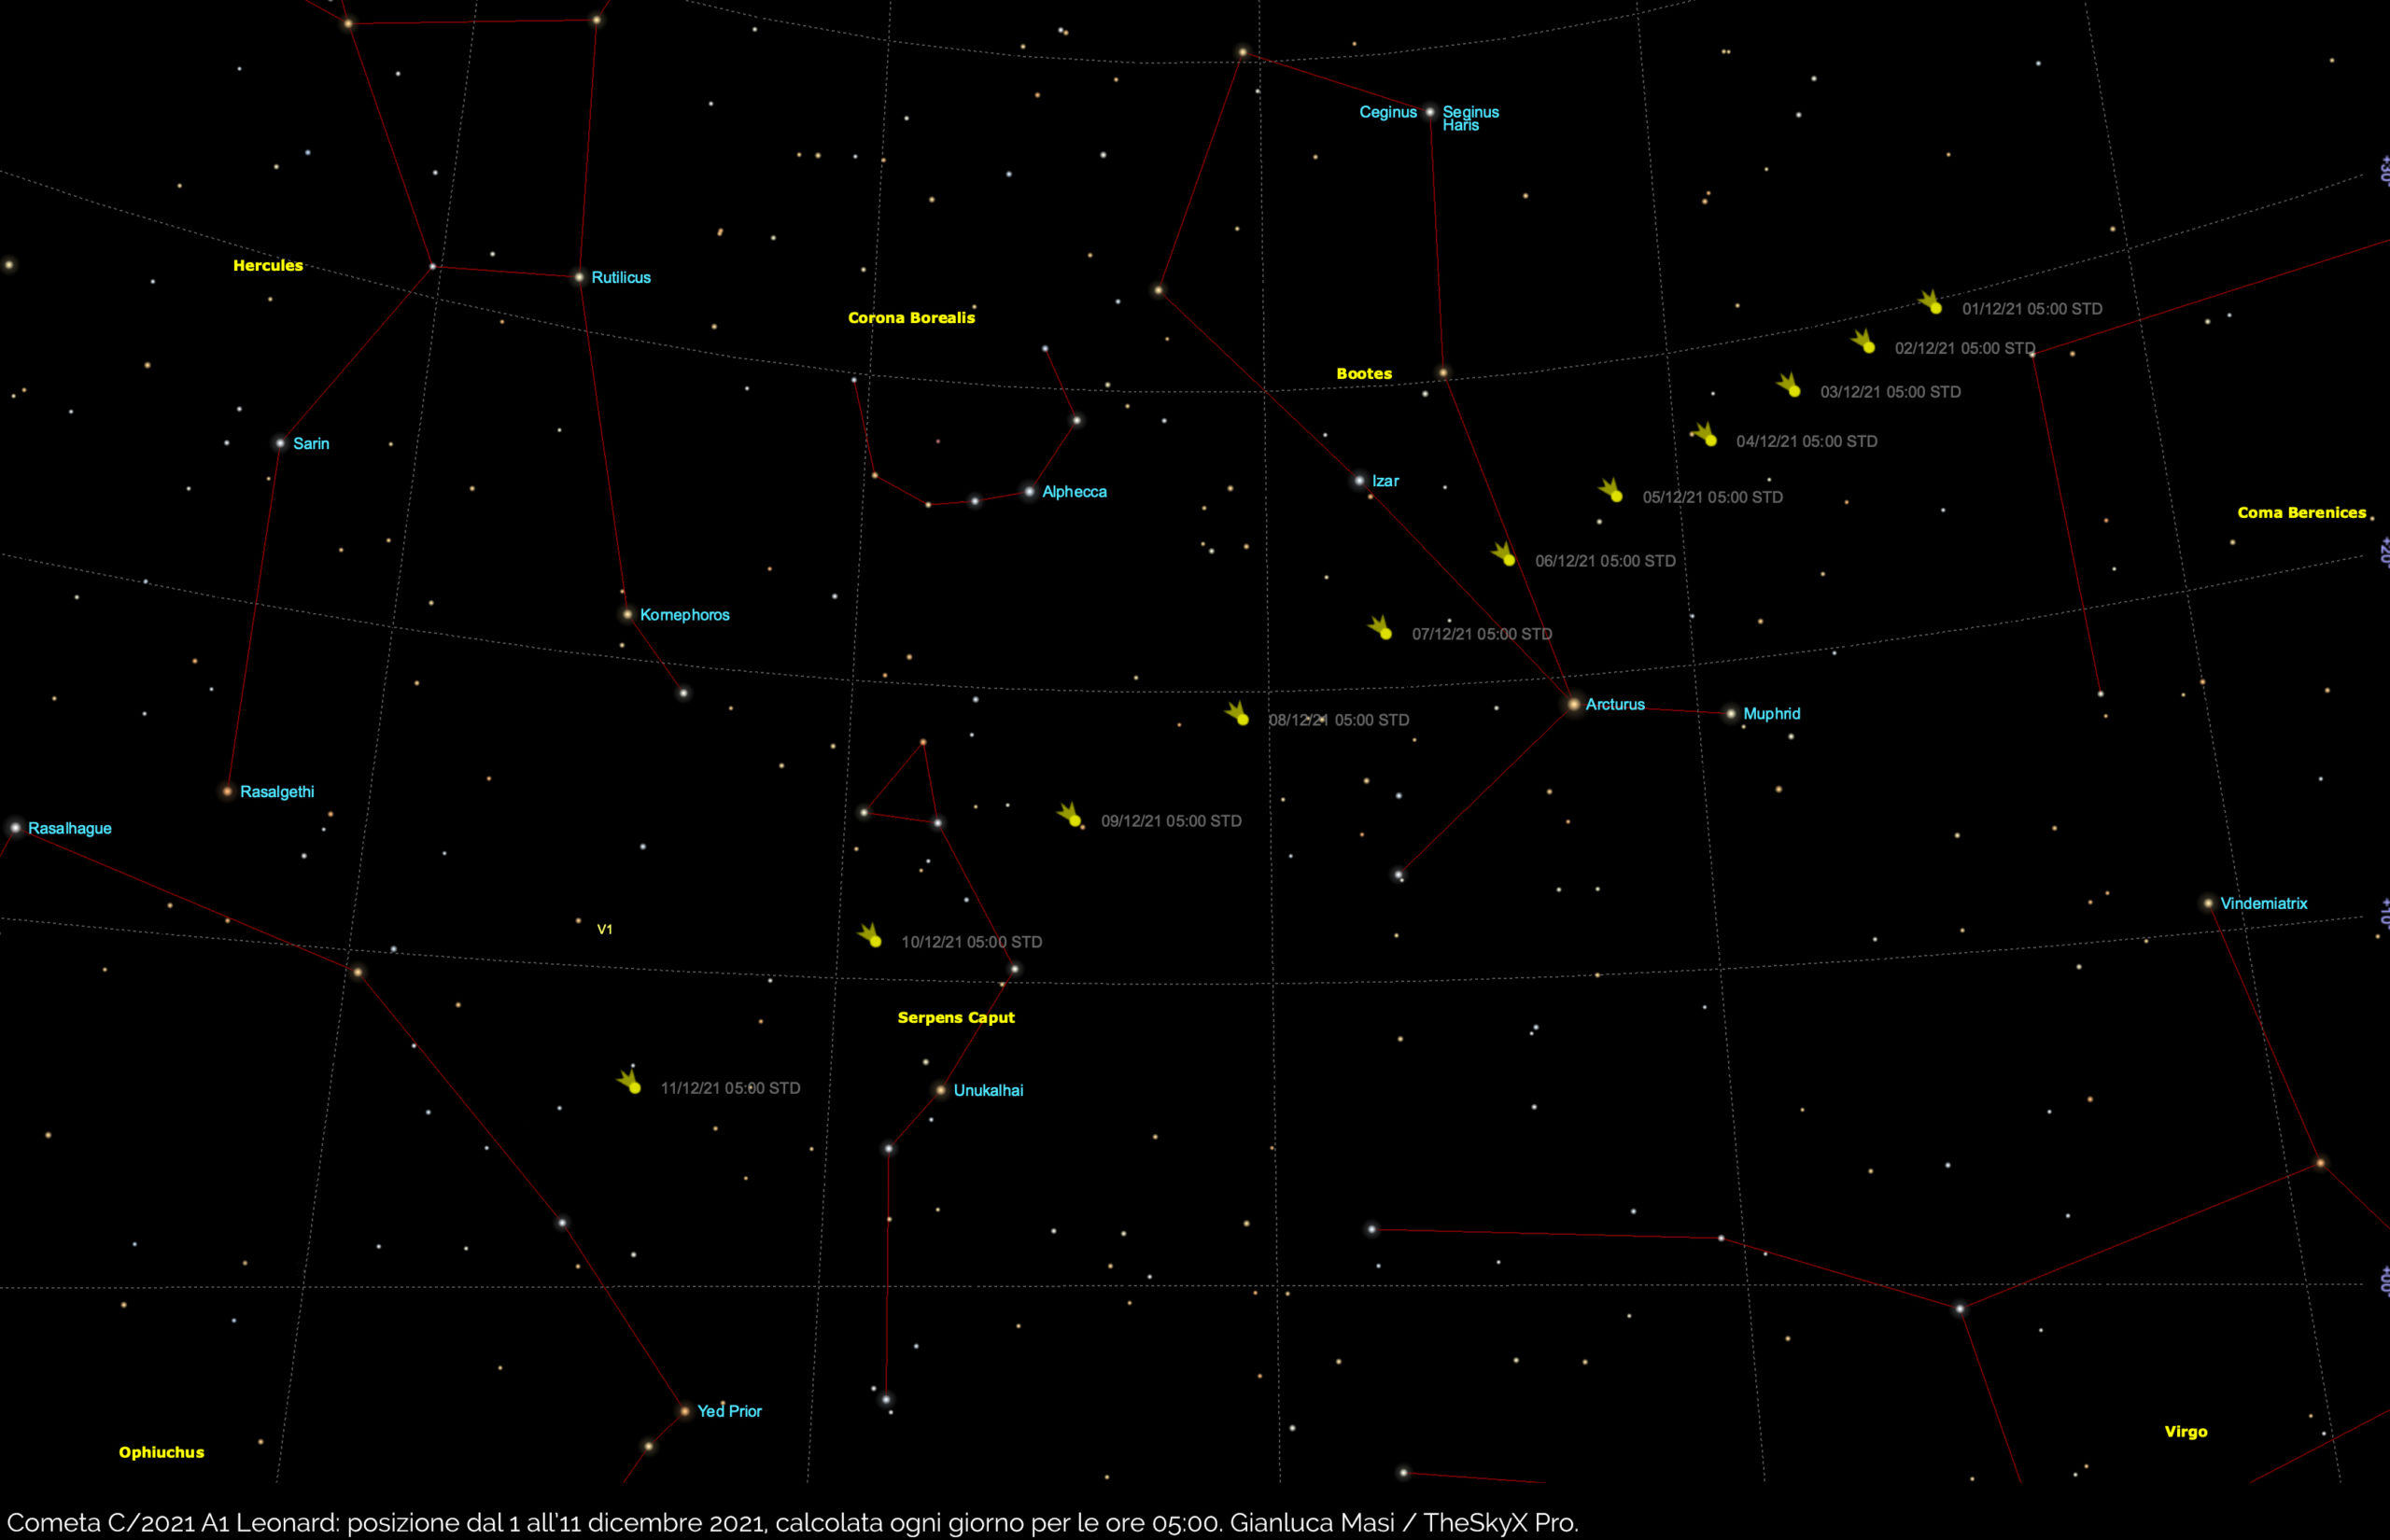 Cometa C/2021 A1 Leonard: posizione nel cielo tra 1 e 11 dicembre 2021.